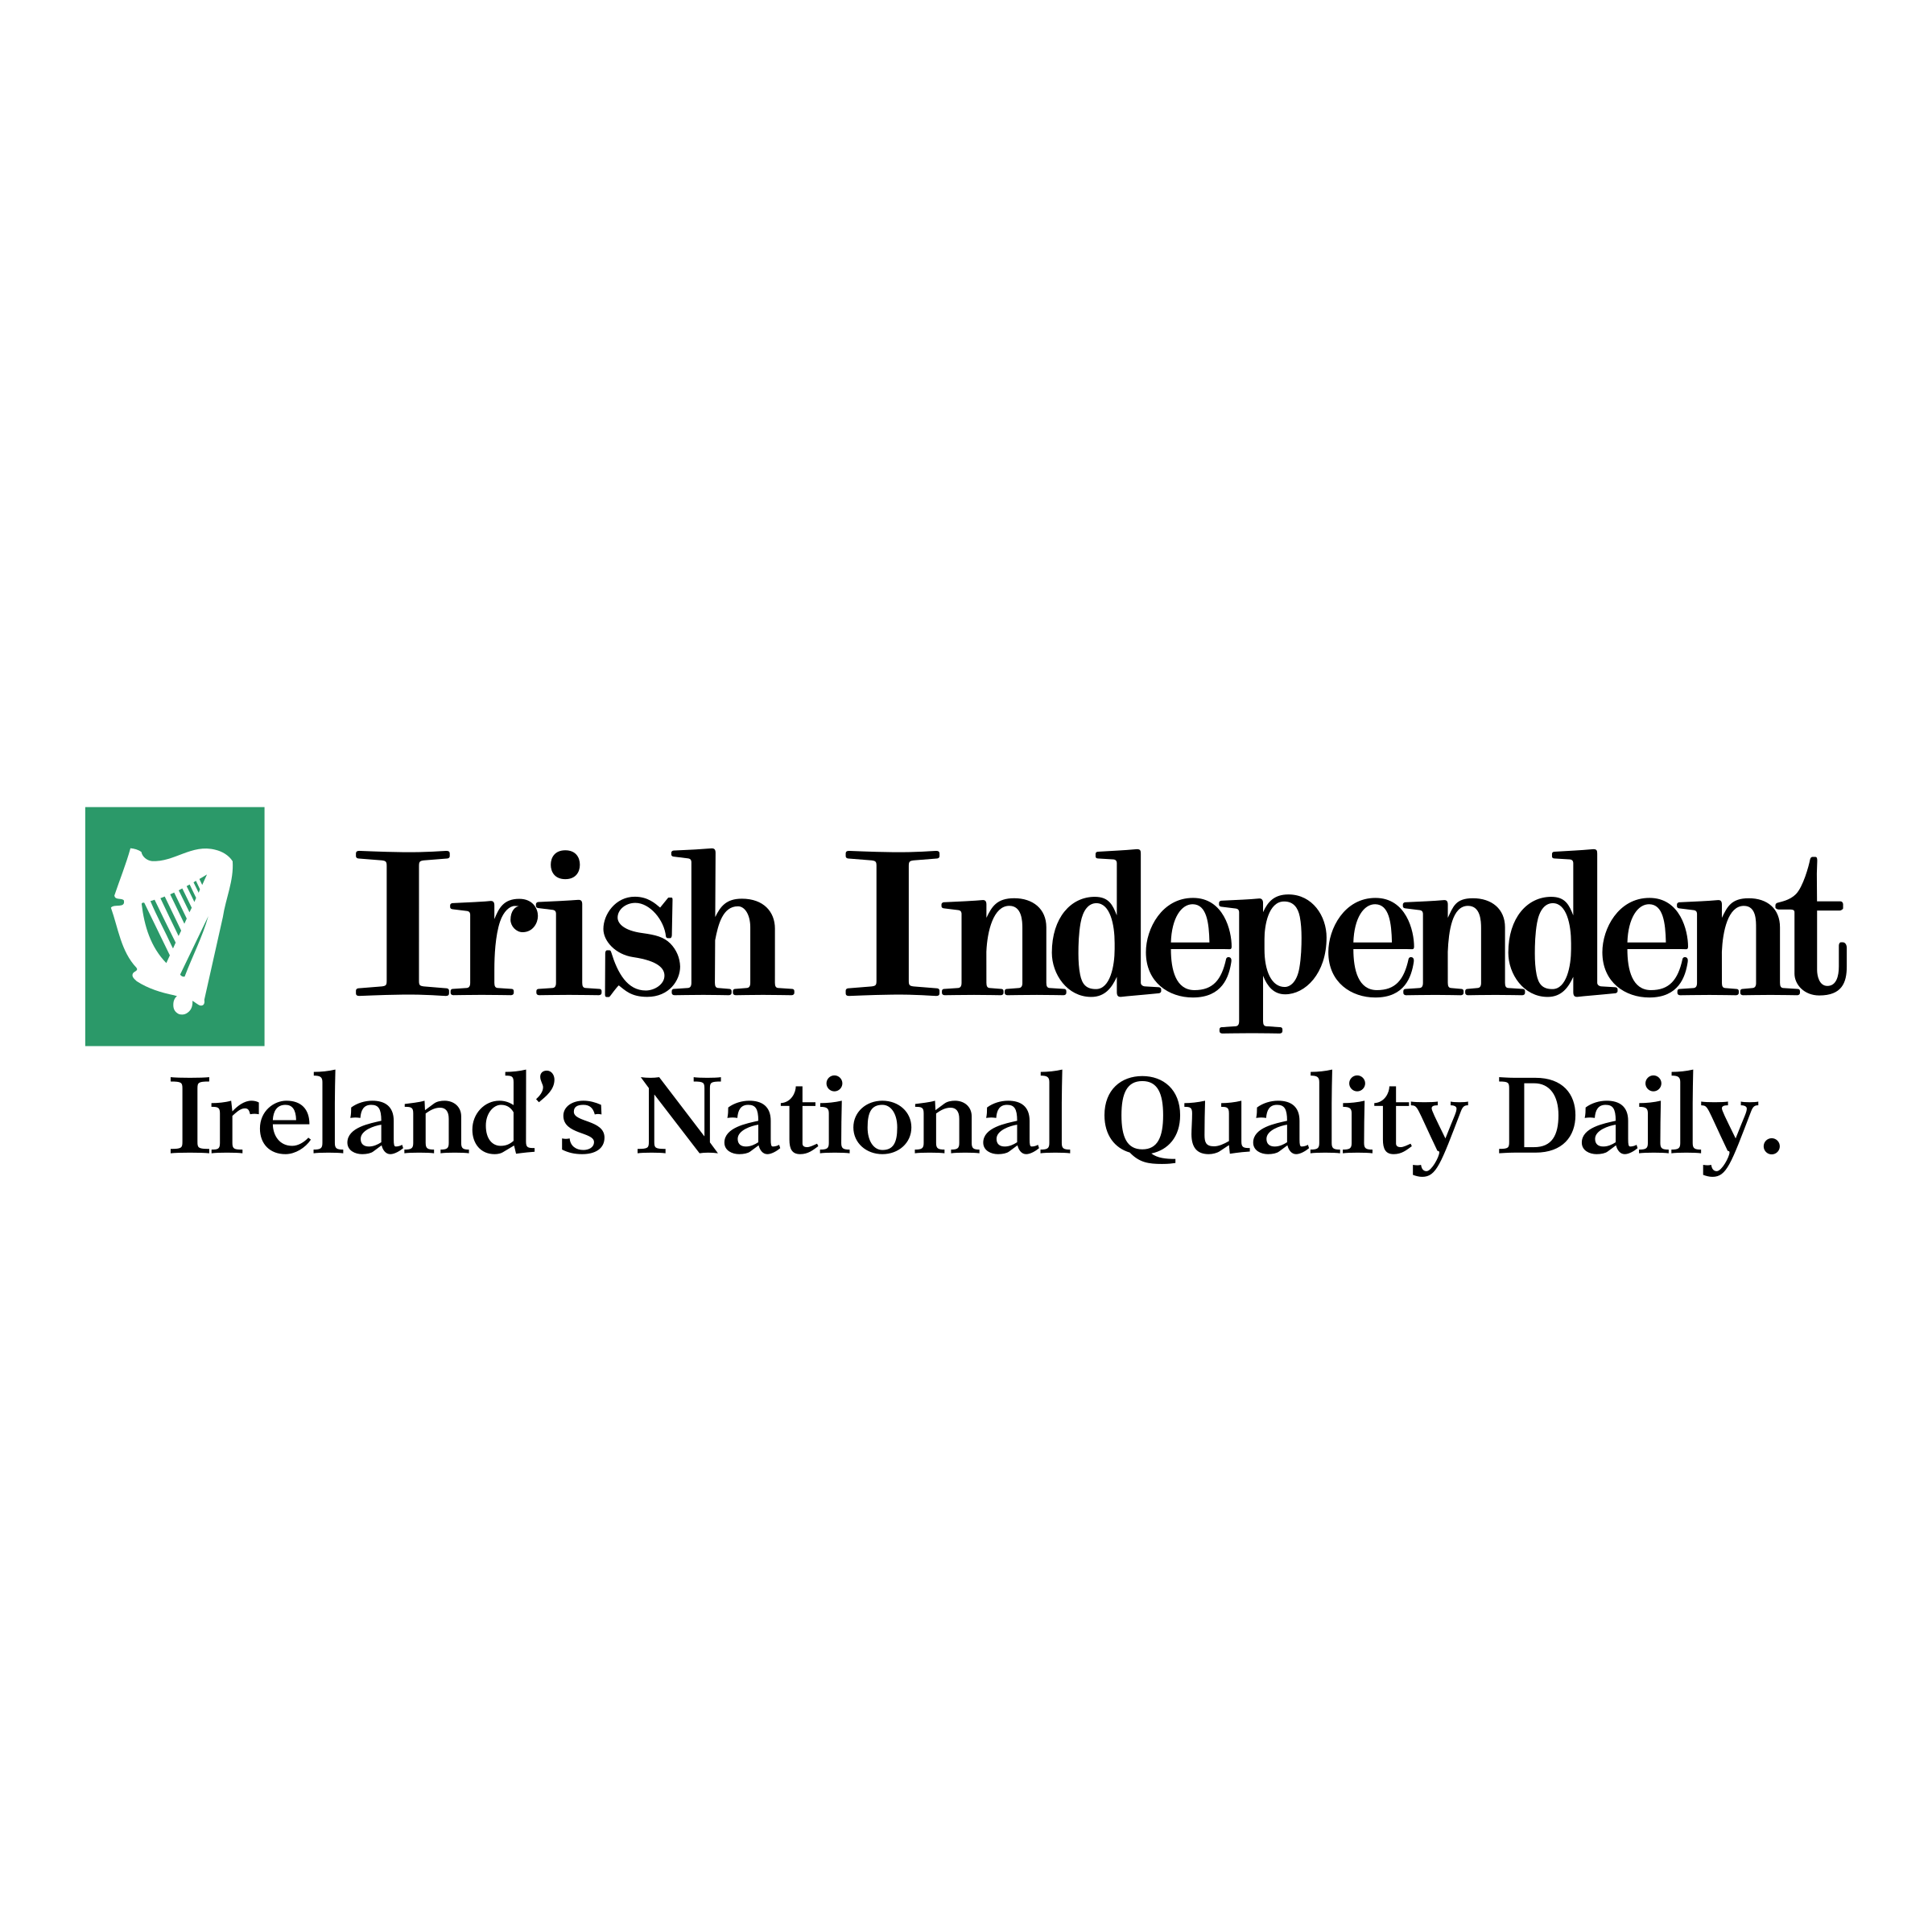 1028-irish-independent-logo-png-transparent.png